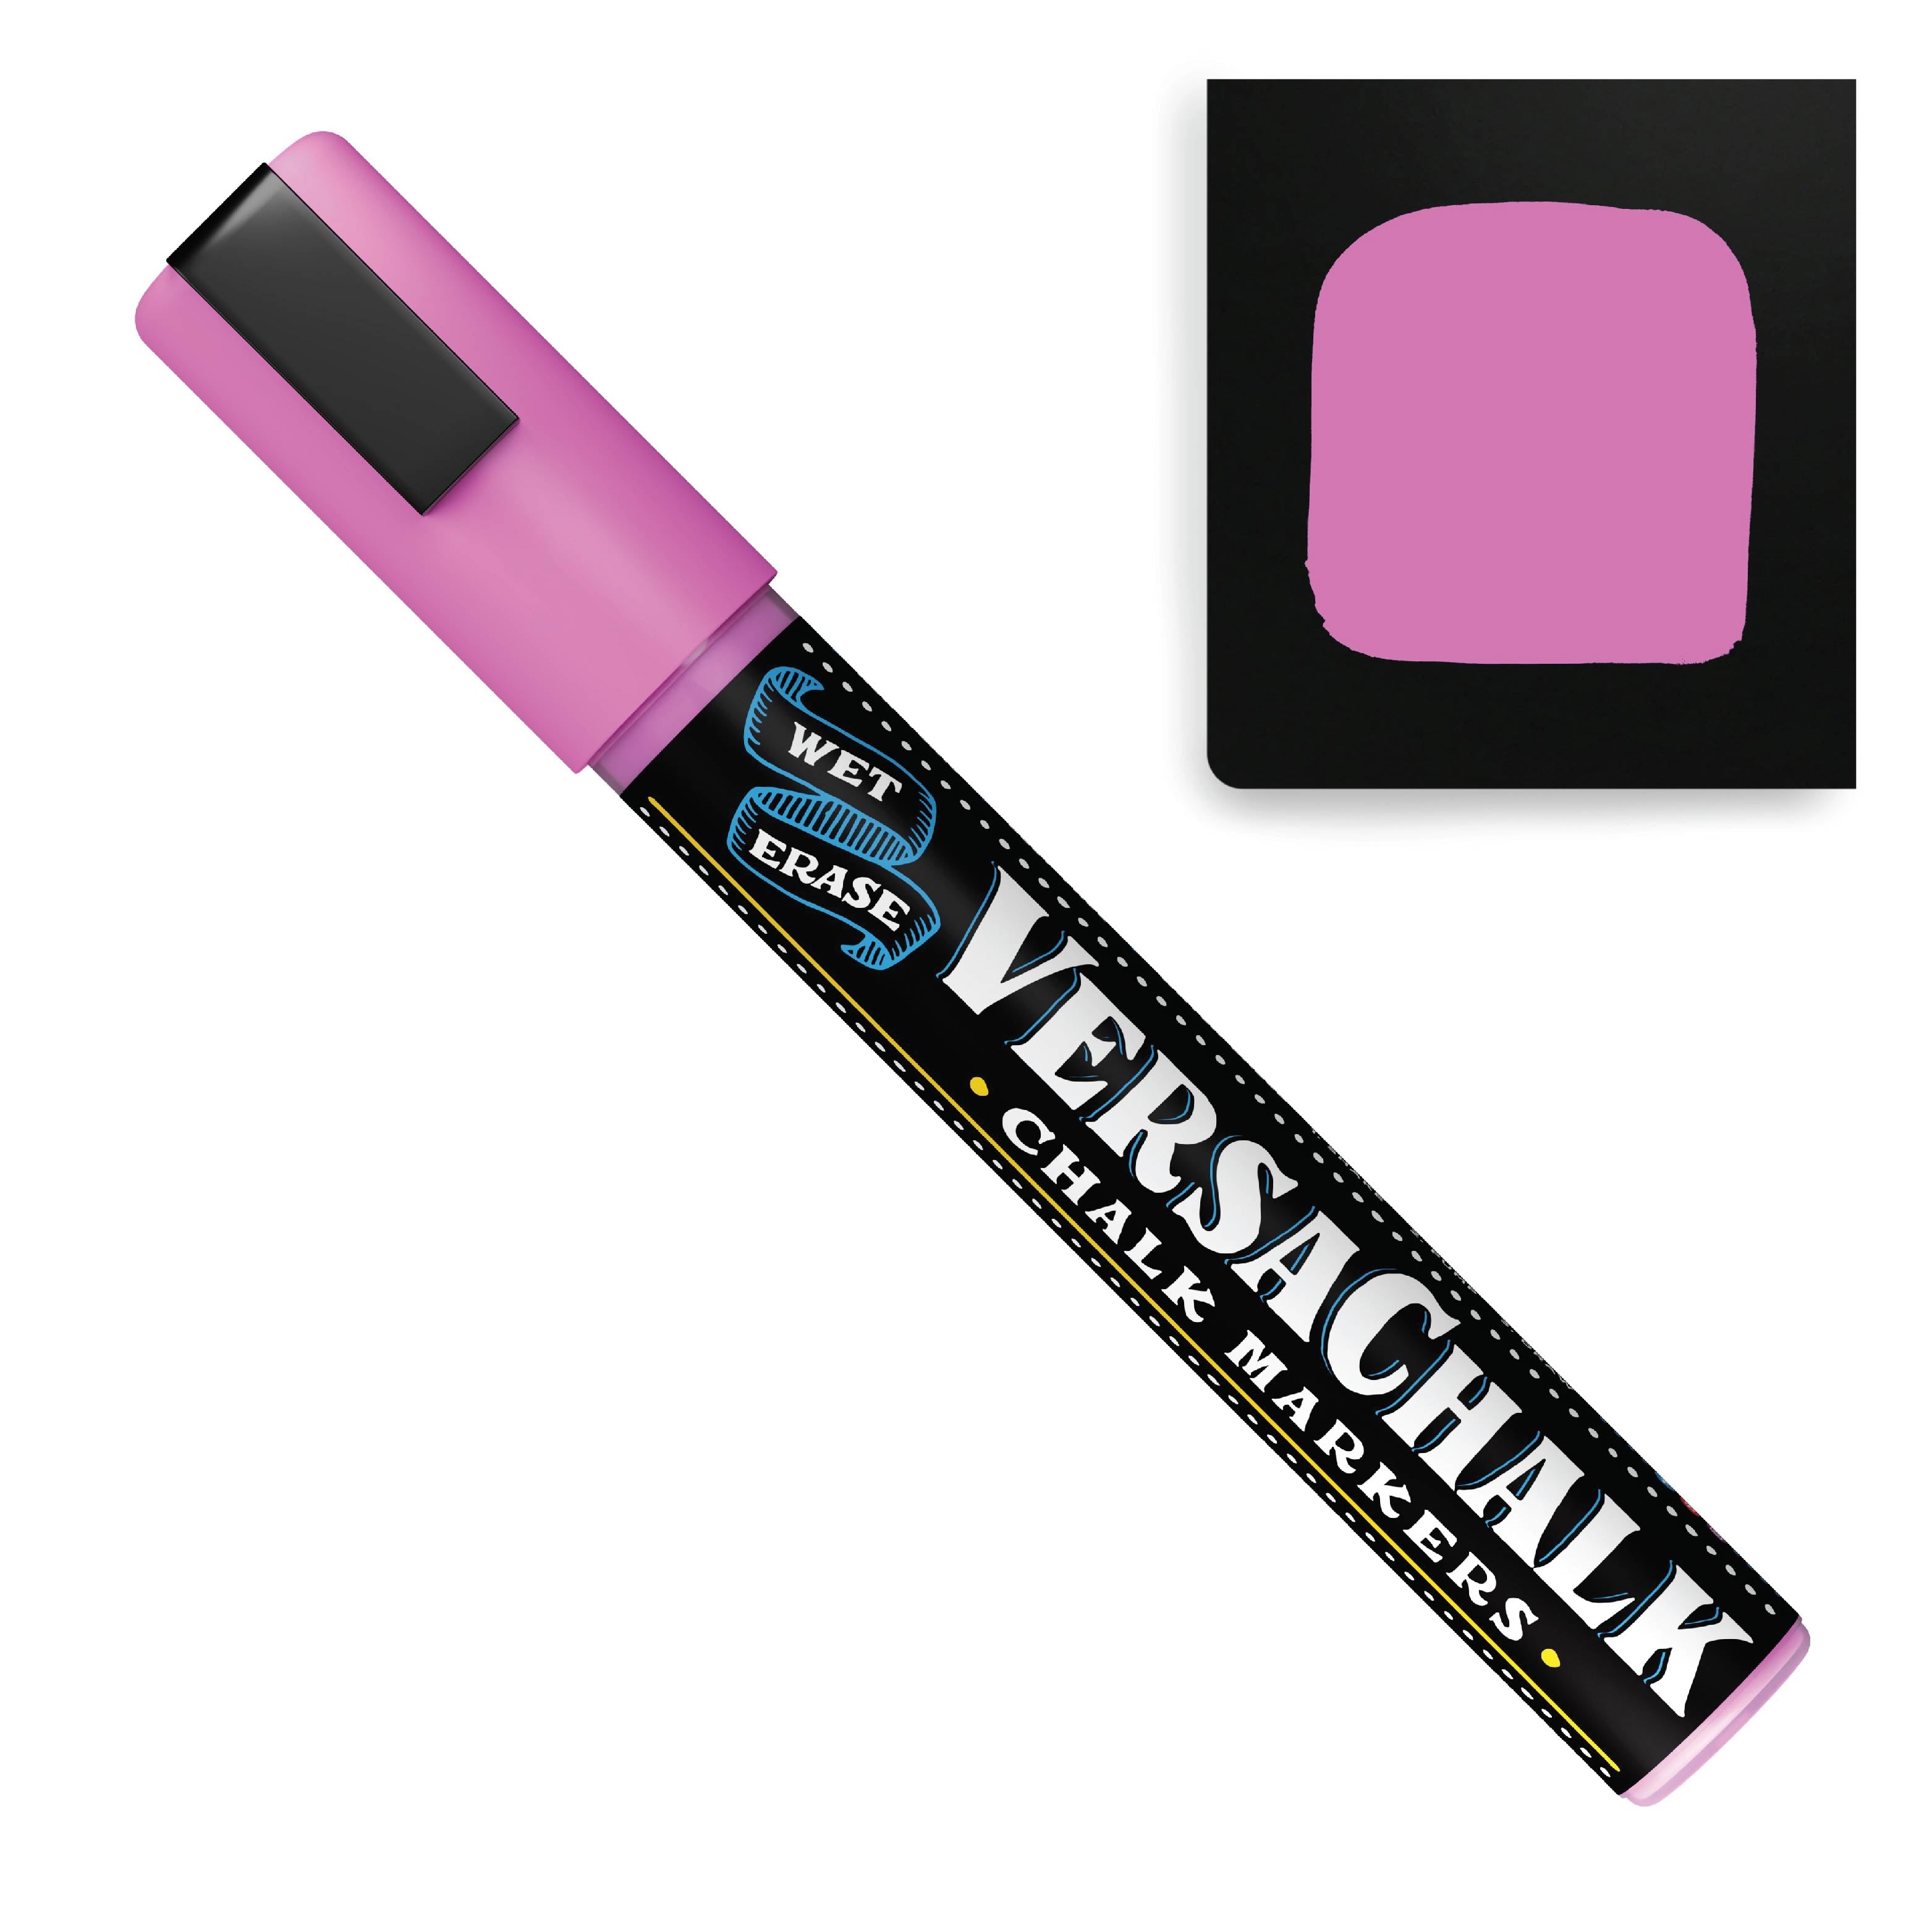 VersaChalk Neon Liquid Chalk Markers by VersaChalk - Wet Erase